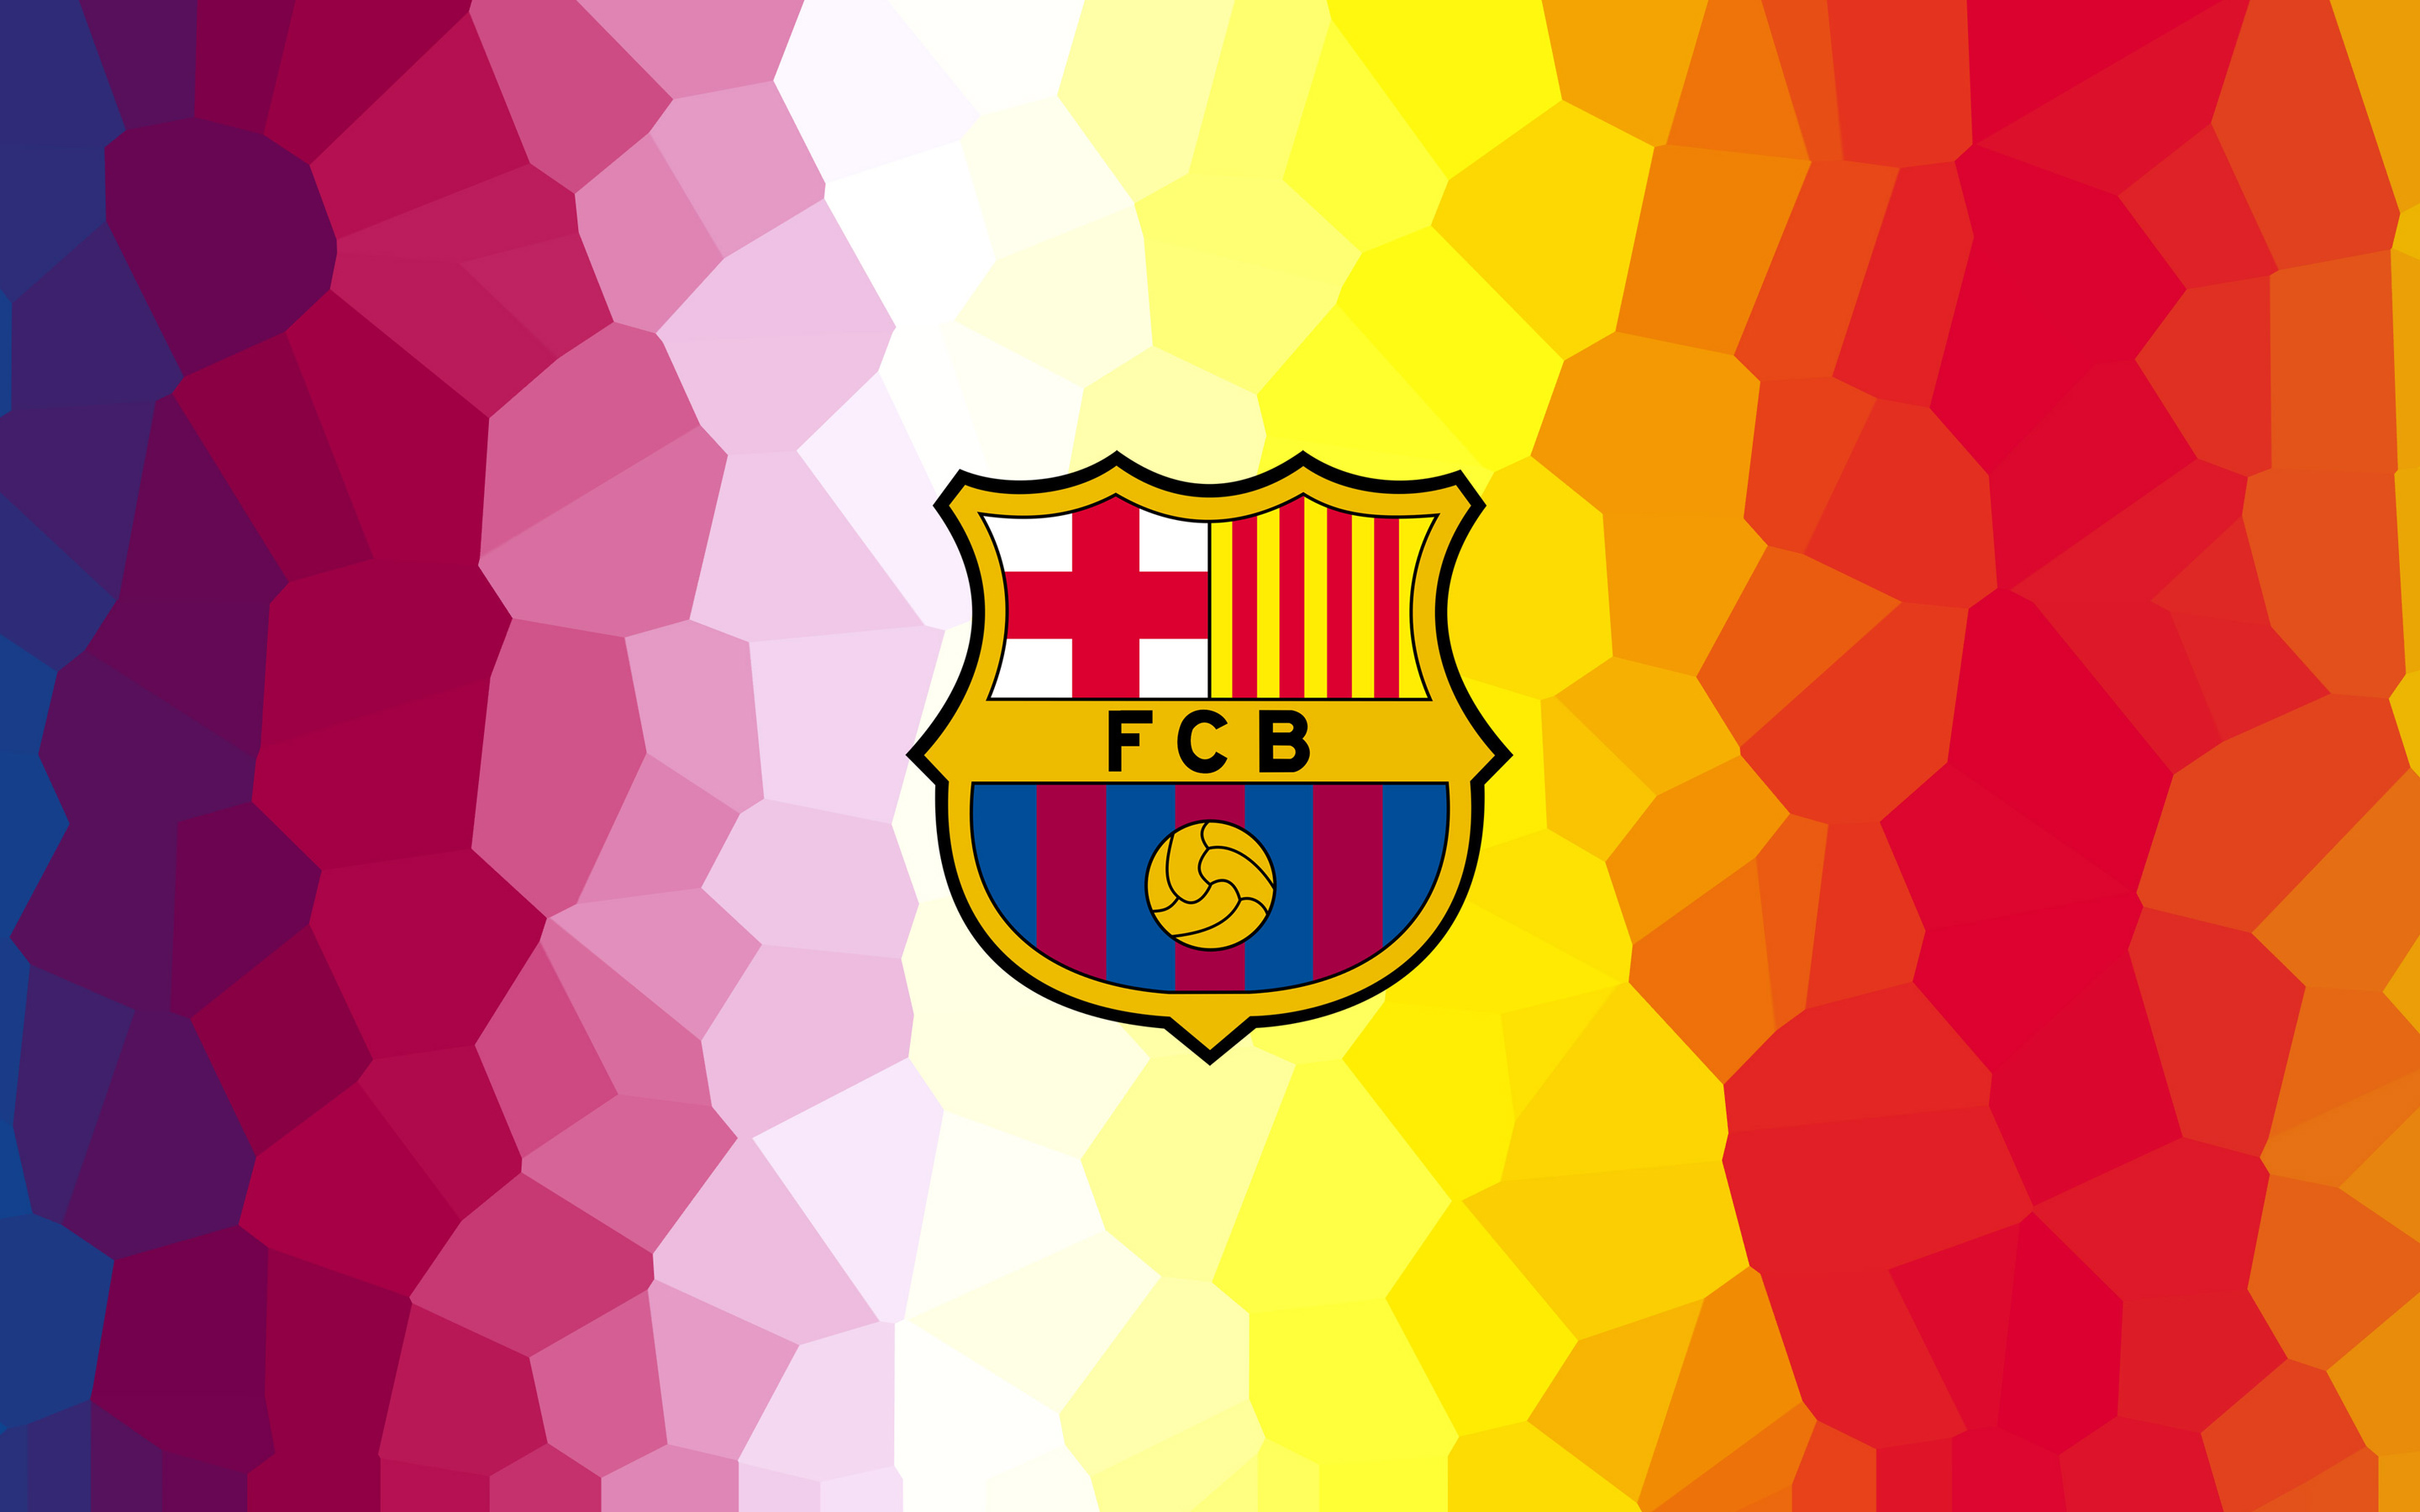 Wallpaper 4k Fcb Fc Barcelona 4k Arsenal Barcelona Fcb